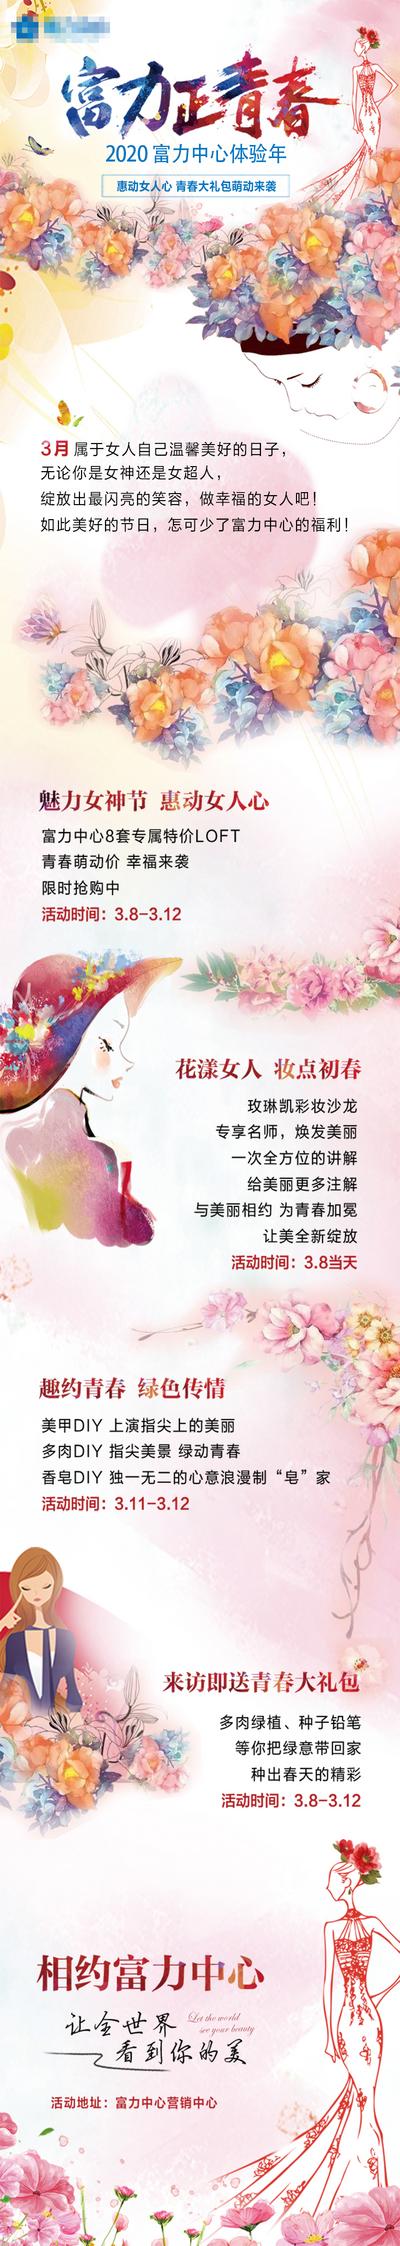 【南门网】专题设计 长图 地产 公历节日 妇女节 活动 插画